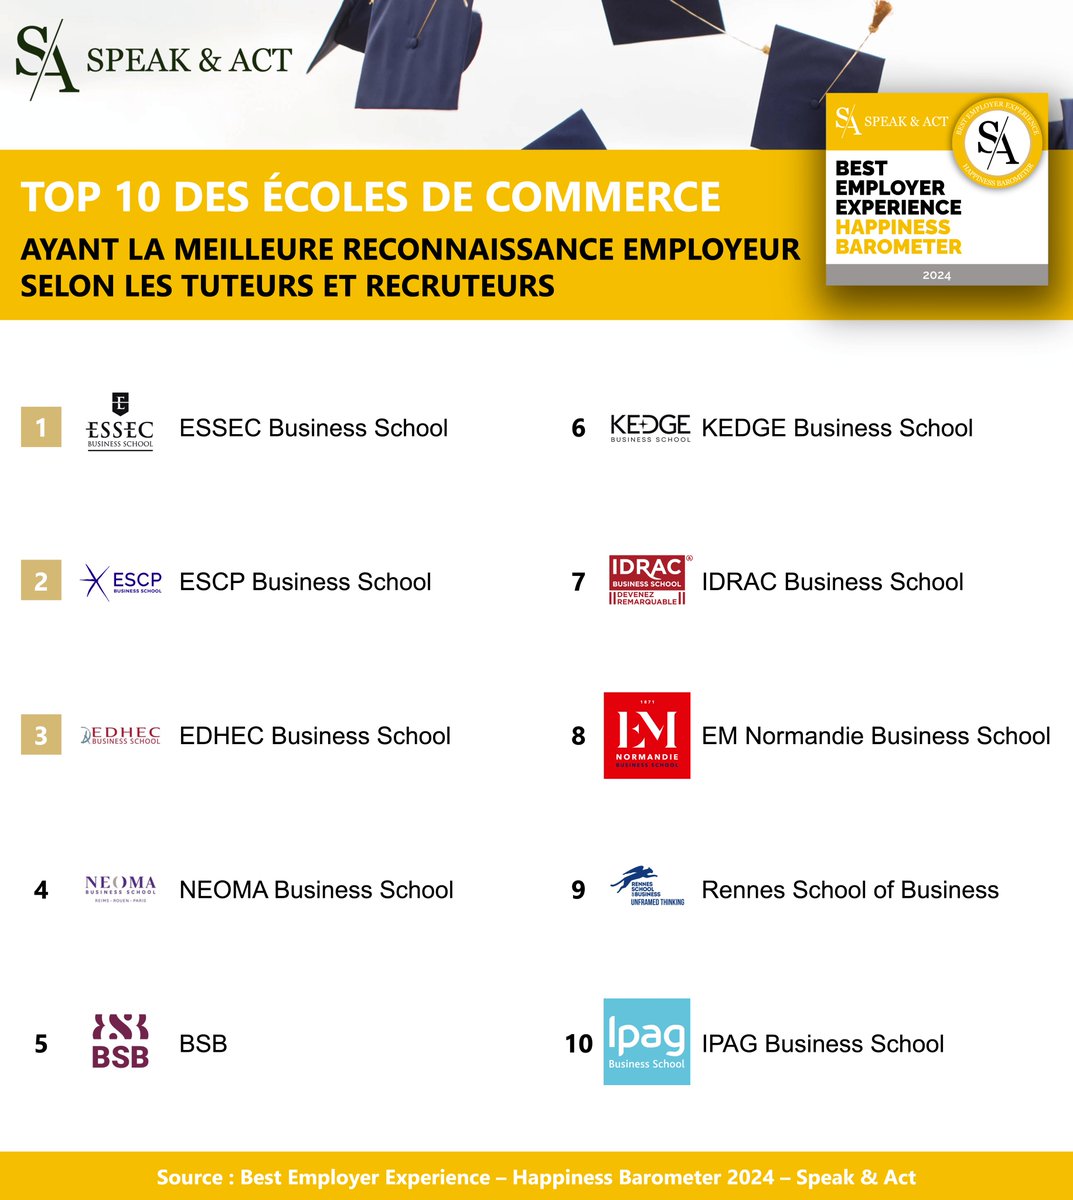 Quelles sont les écoles de commerce ayant la meilleure reconnaissance employeur en 2024 ? 🏆 Speak & Act dévoile la nouvelle édition de son classement Best Employer Experience - Happiness Barometer 2024 avec le TOP 10 des écoles de commerce.